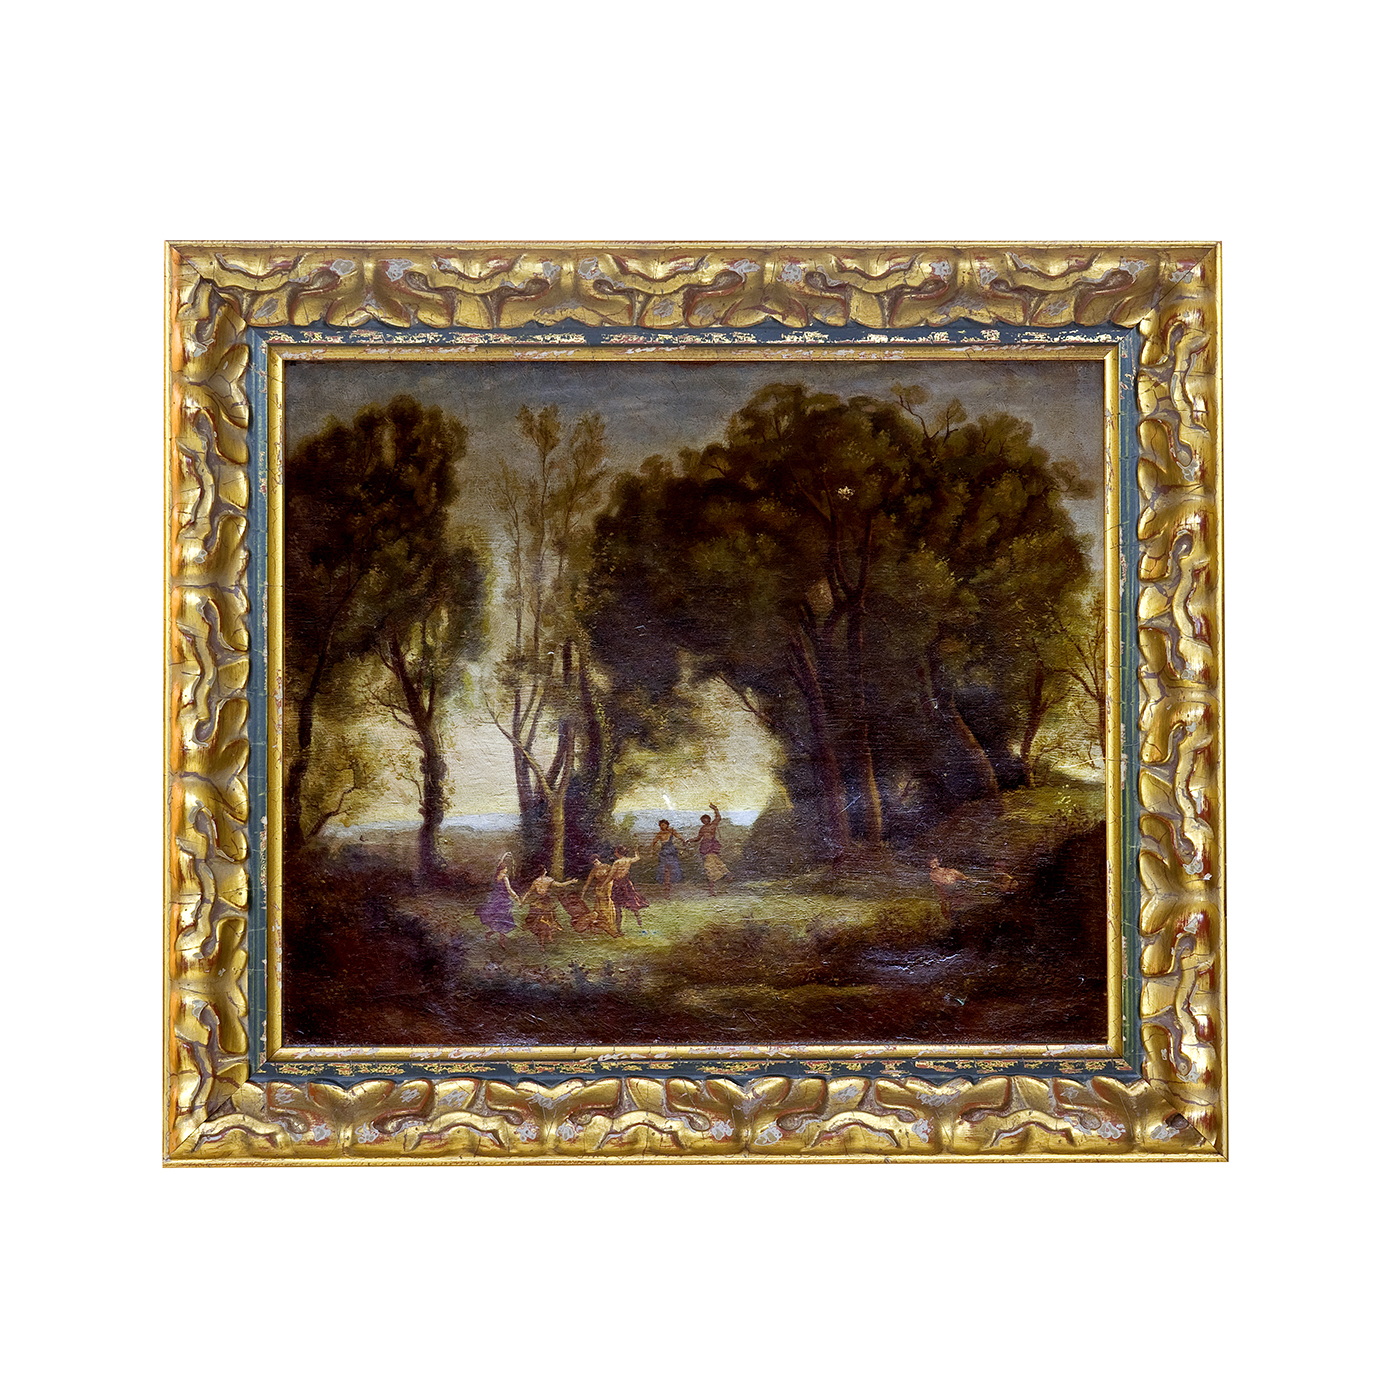 Jean-Baptiste COROT zugeschrieben. Öl auf Leinwand. "Bacchanal im Wald".